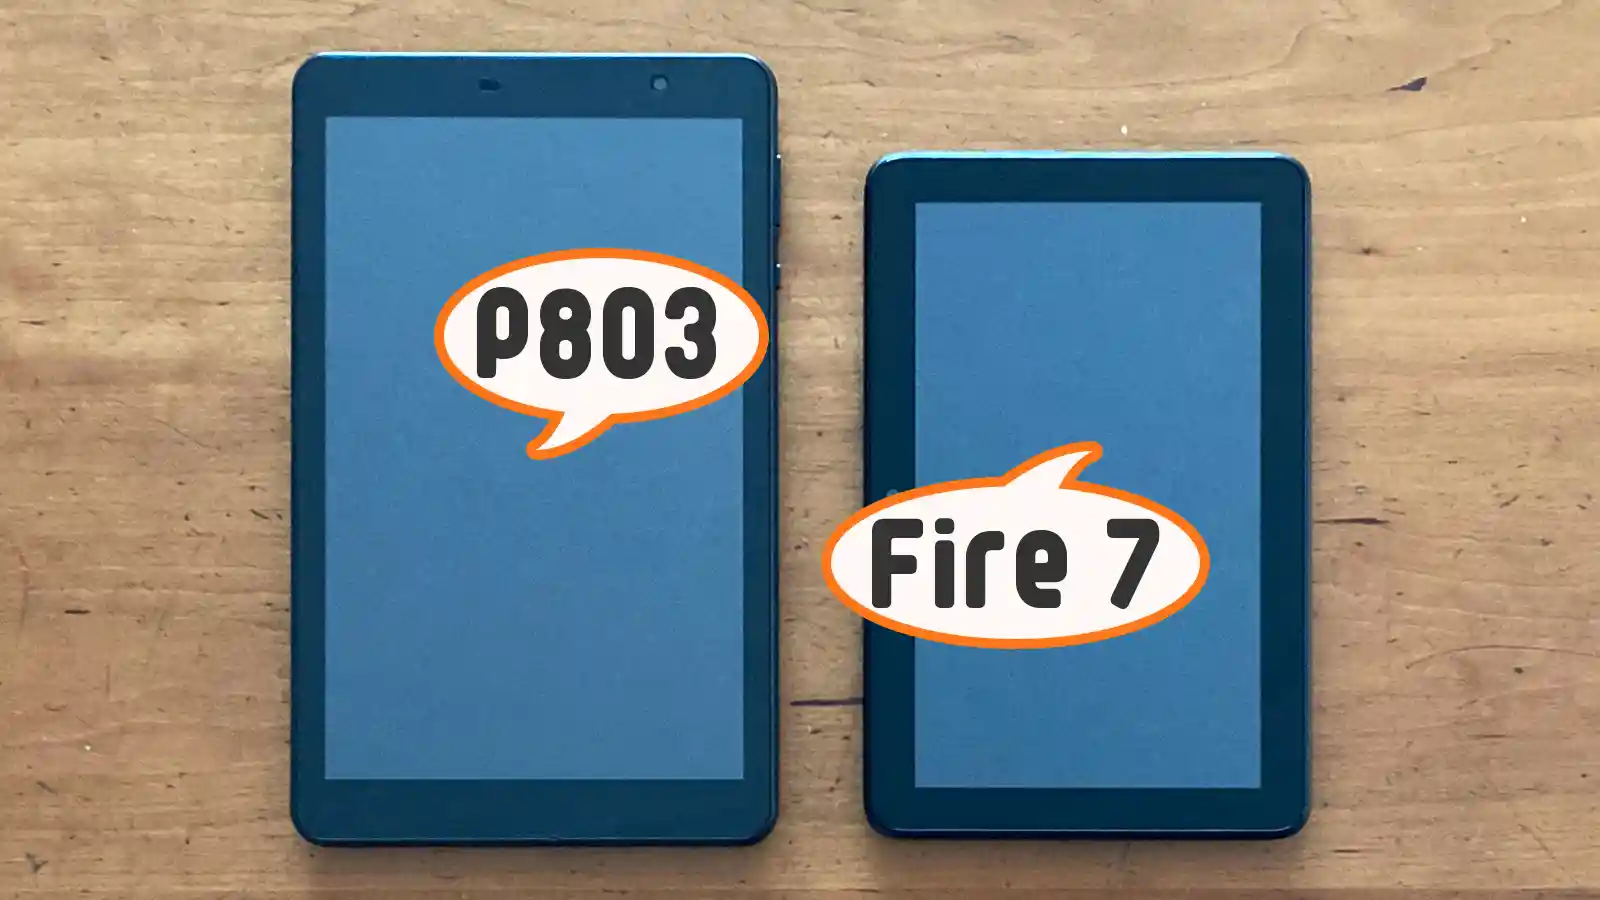 イオシス EGBOK P803 Amazon Fire 7 タブレット 2022年モデル